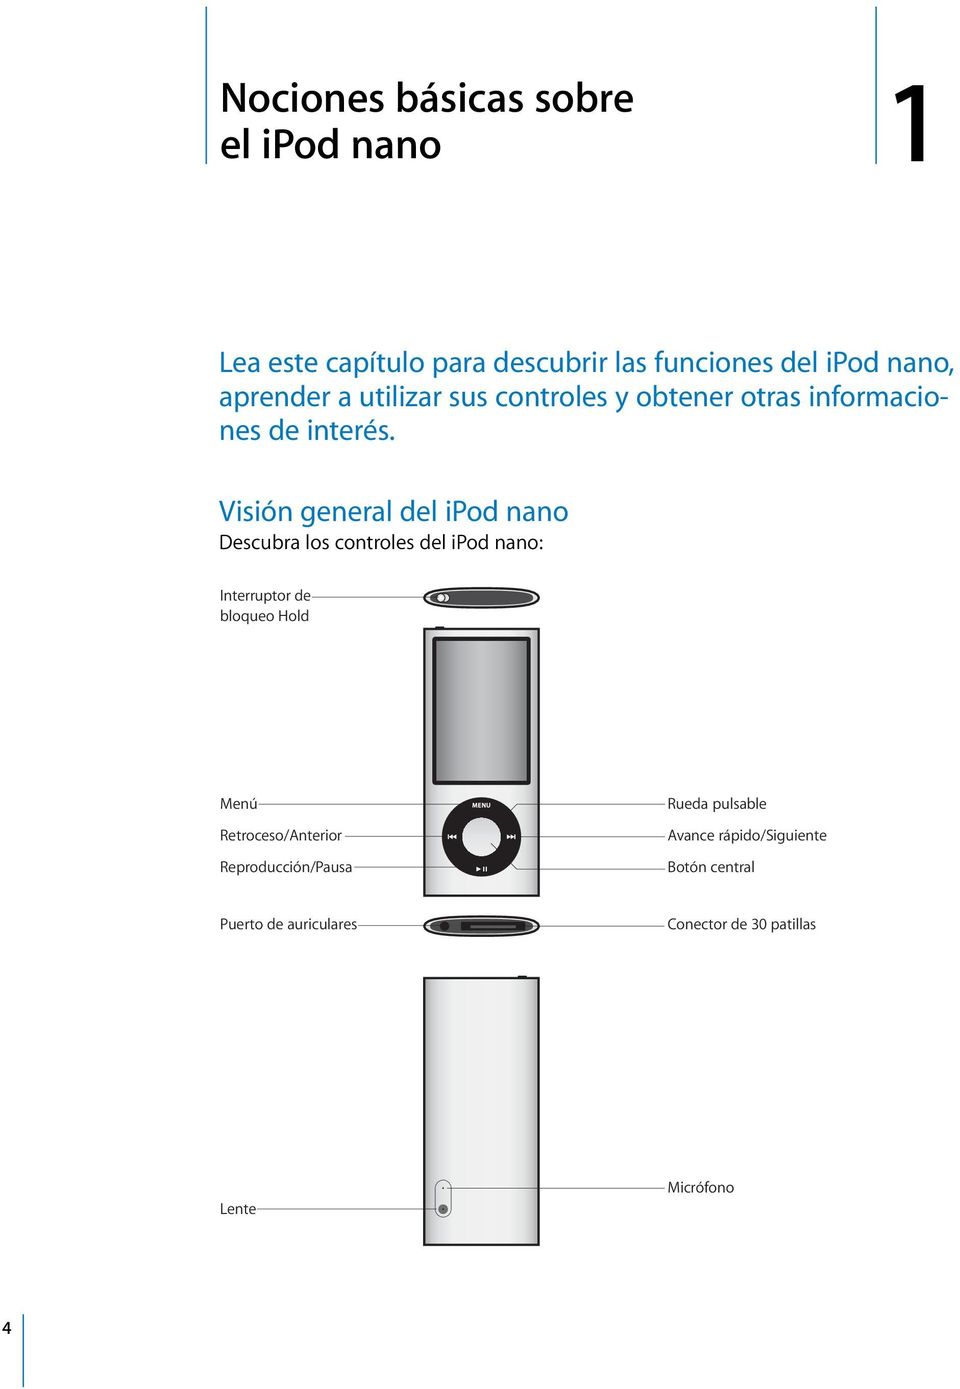 Visión general del ipod nano Descubra los controles del ipod nano: Interruptor de bloqueo Hold Menú